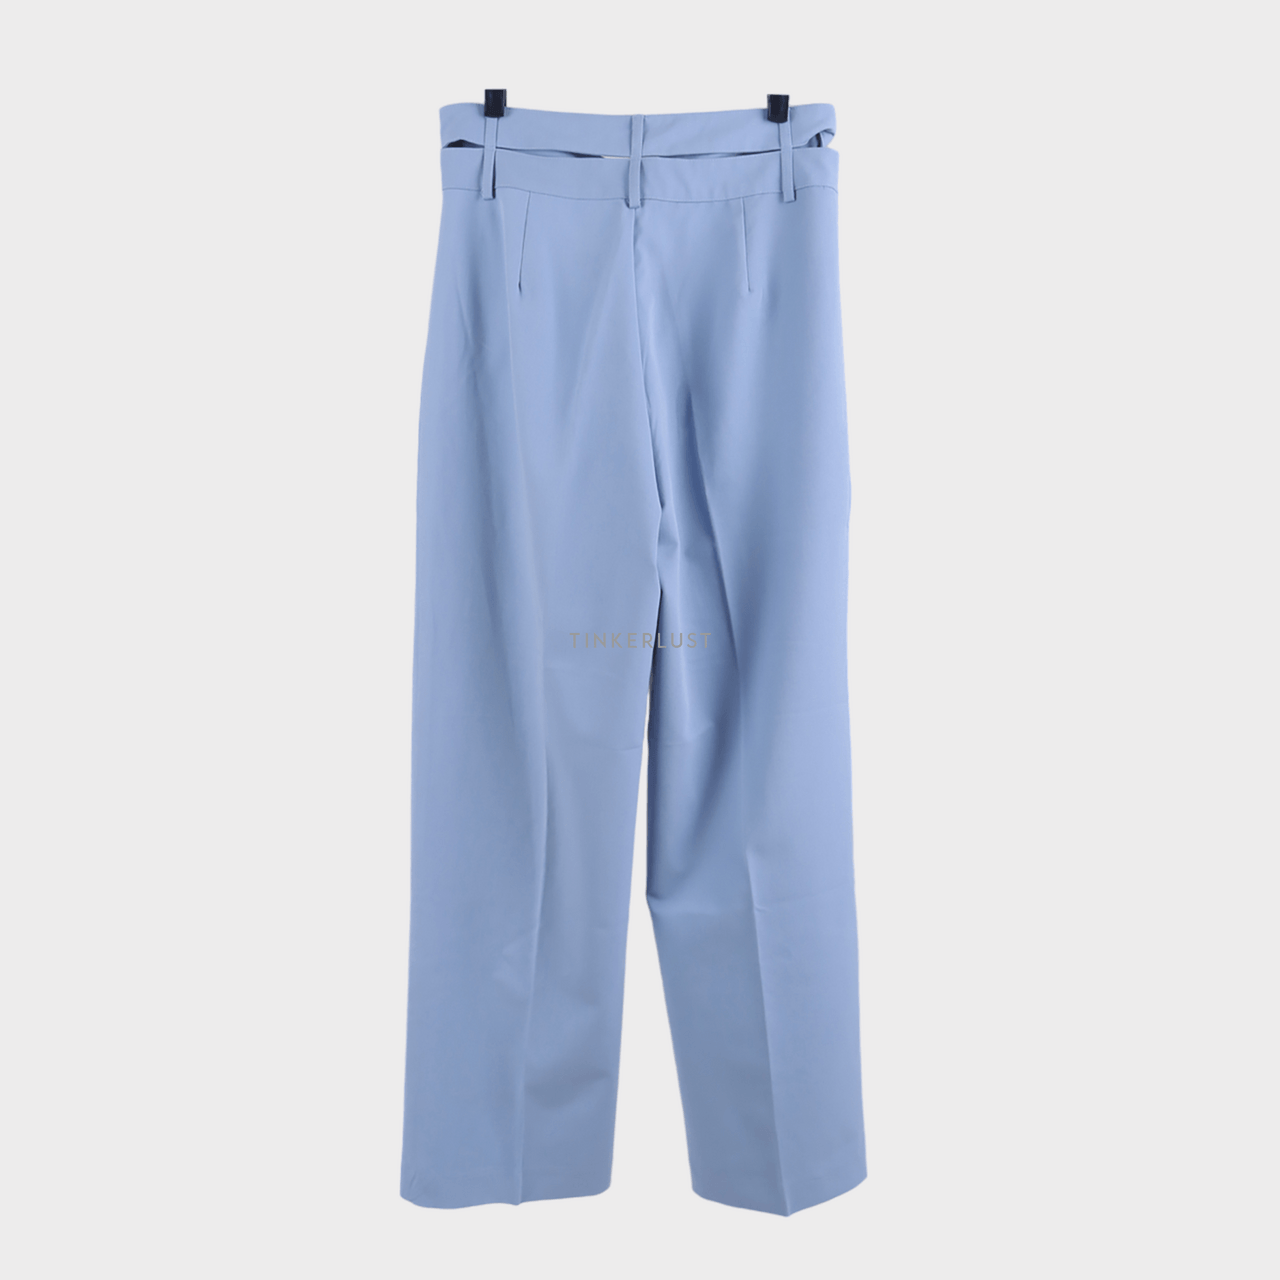 3Mongkis Blue Long Pants